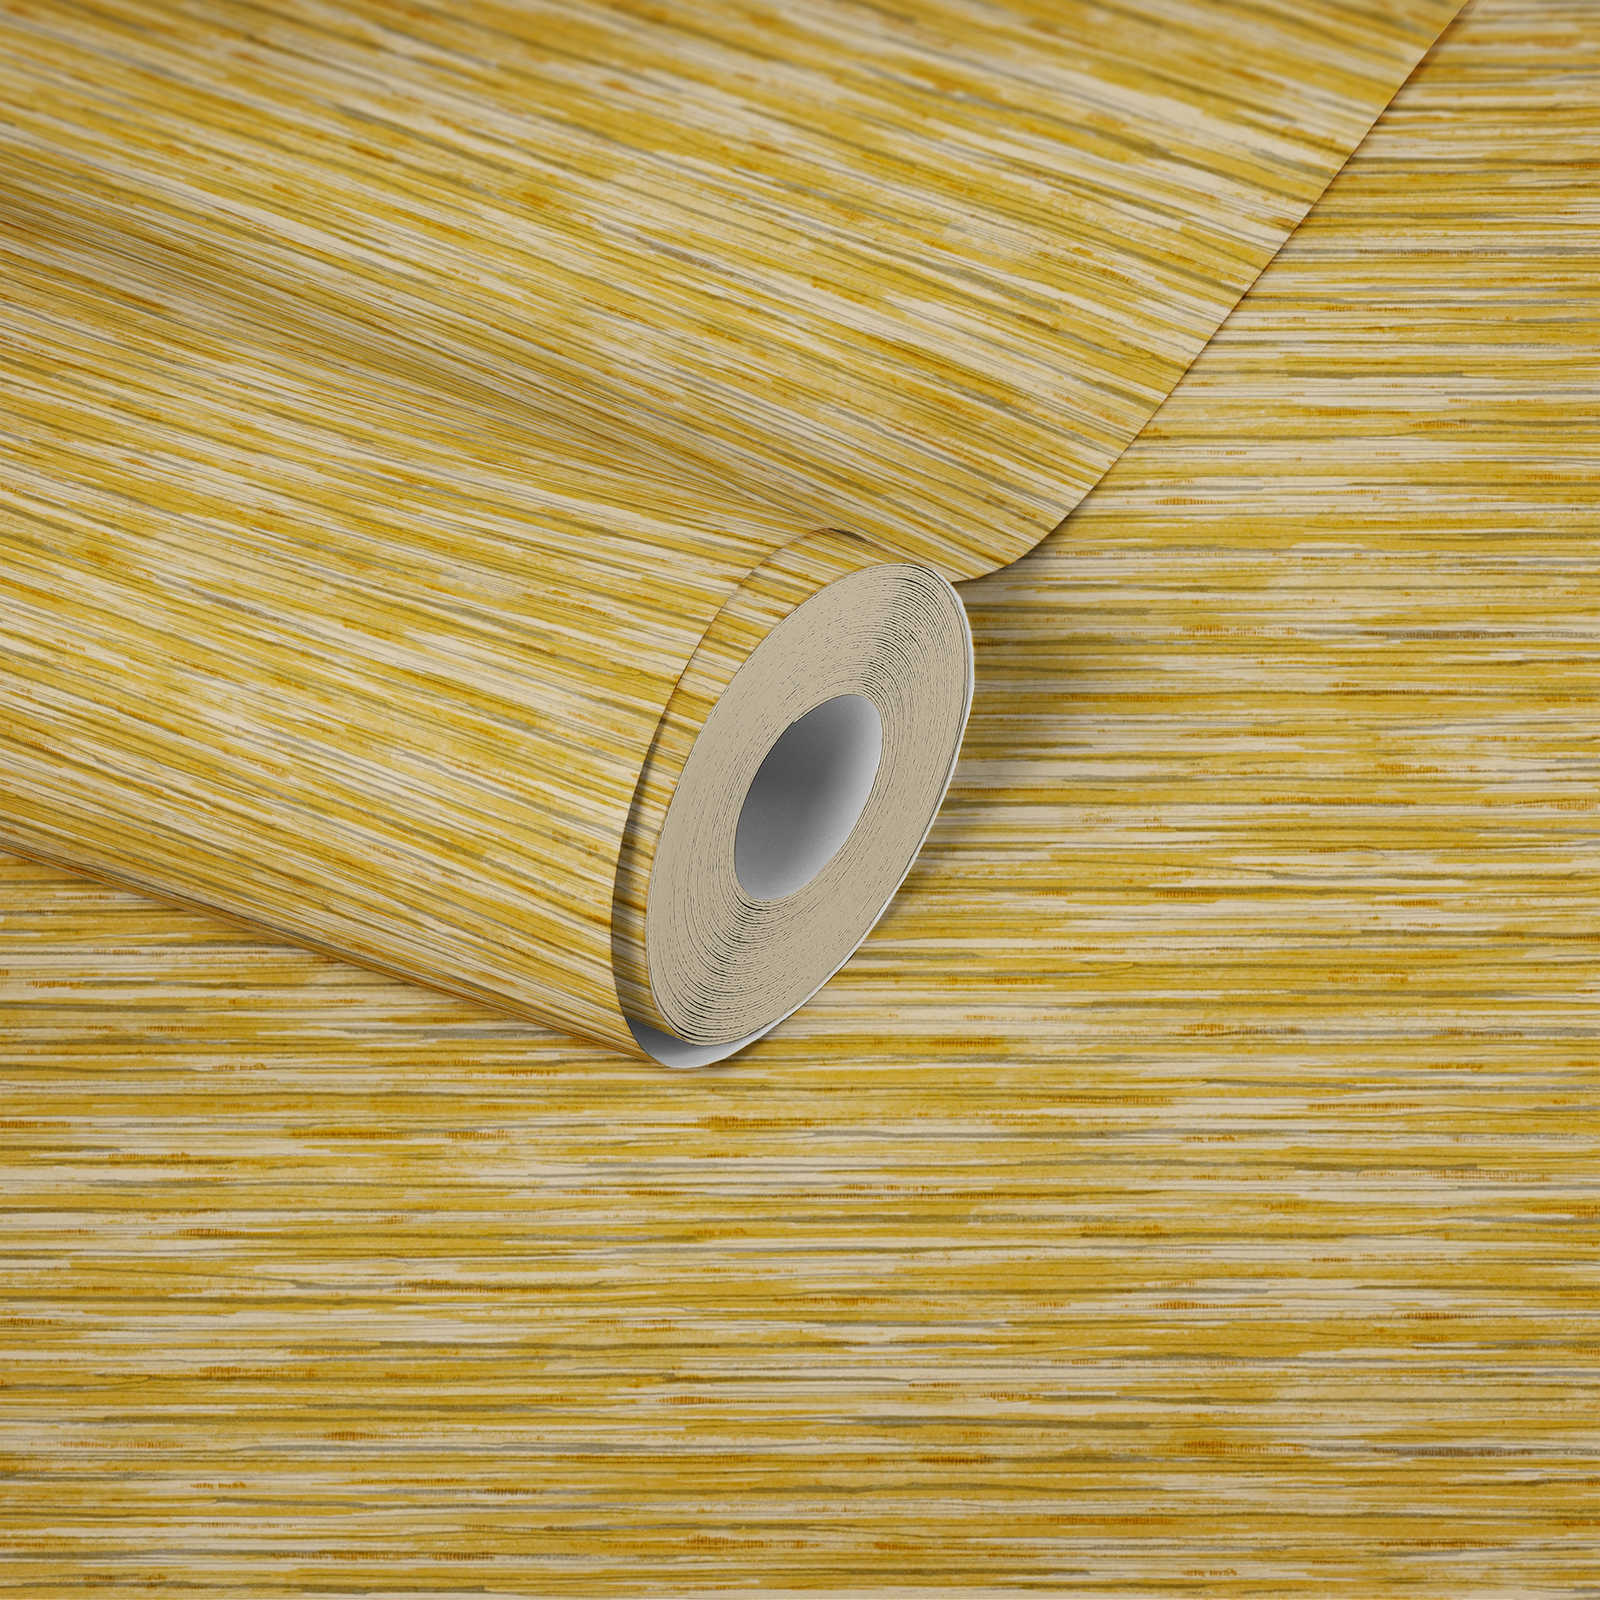             Vlekkenpatroon behang met natuurlijke kleur arceringen - geel
        